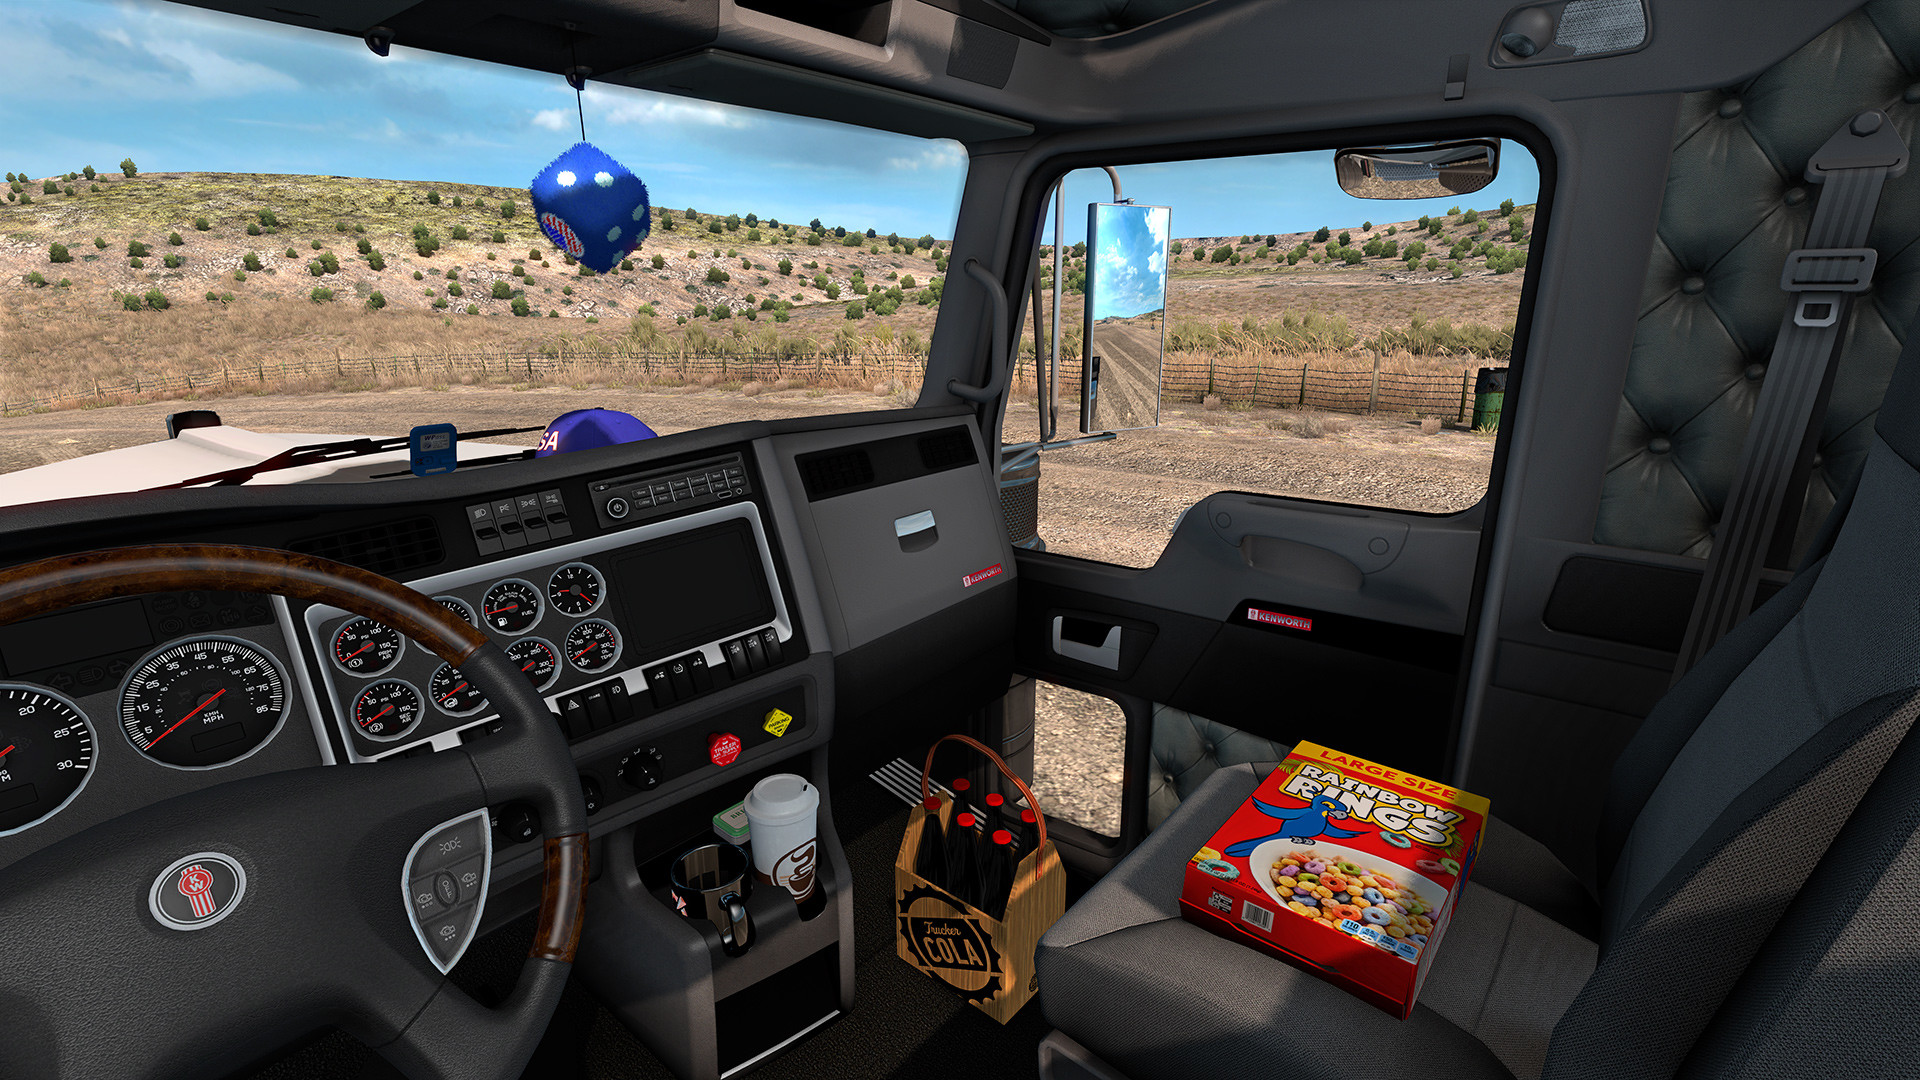 Kilimanjaro Dag landsby American Truck Simulator - Cabin Accessories on Steam